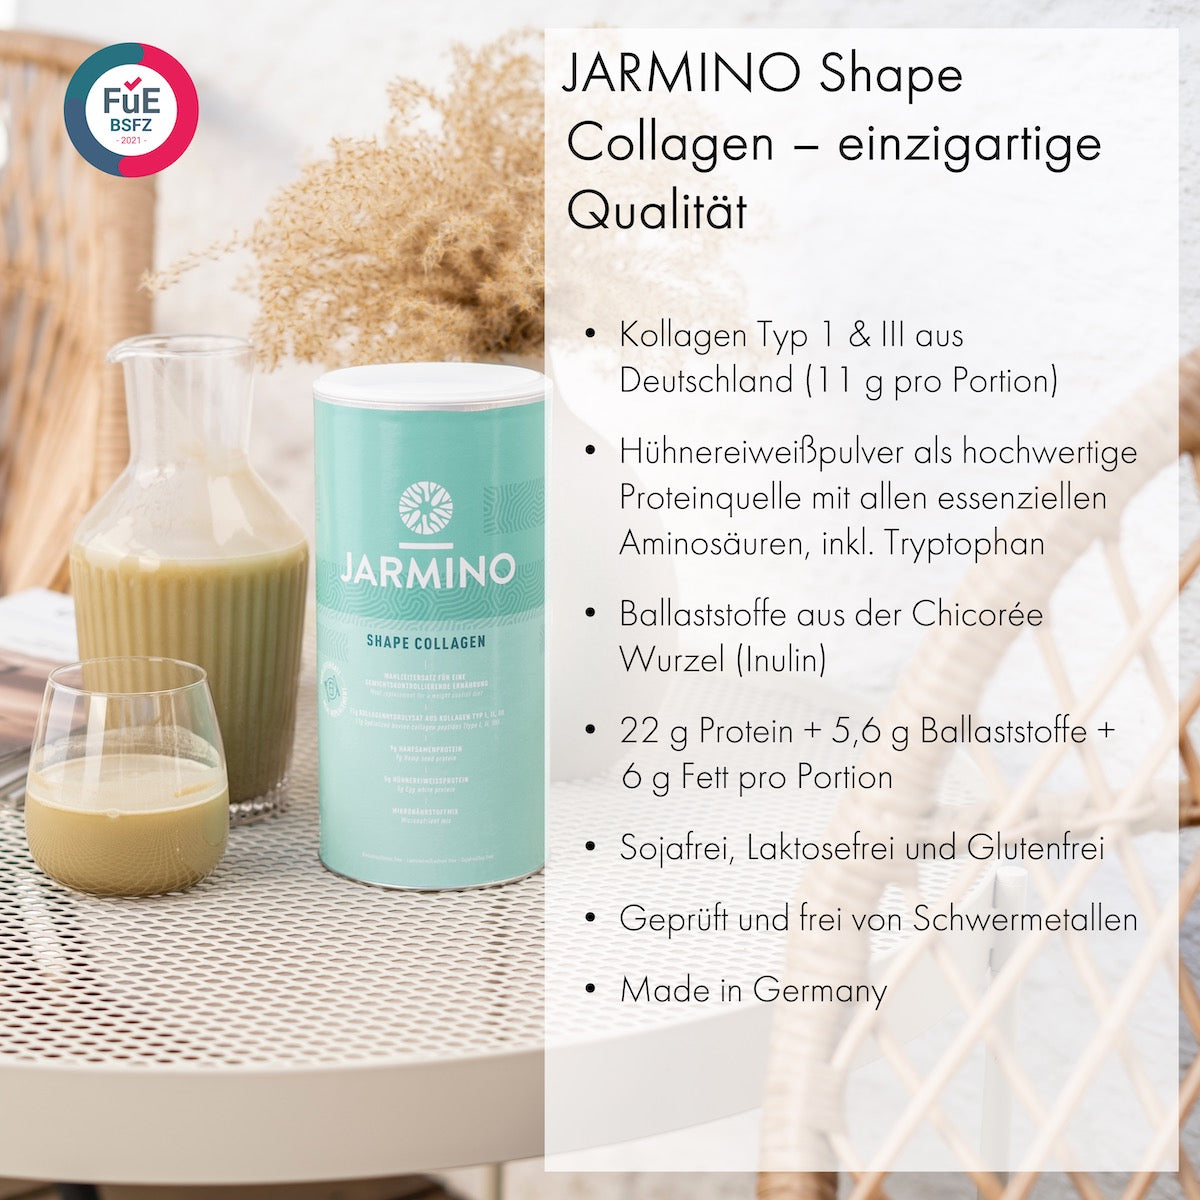 Jarmino - Auf dem Markt gibt es viele Kollagenpulver, aber unser JARMINO  Bio Rinderkollagen ist das weltweit erste Kollagen in Bio-Qualität. 💪✓👉   Das Kollagenpulver ist fast  geschmacksneutral und macht sich daher